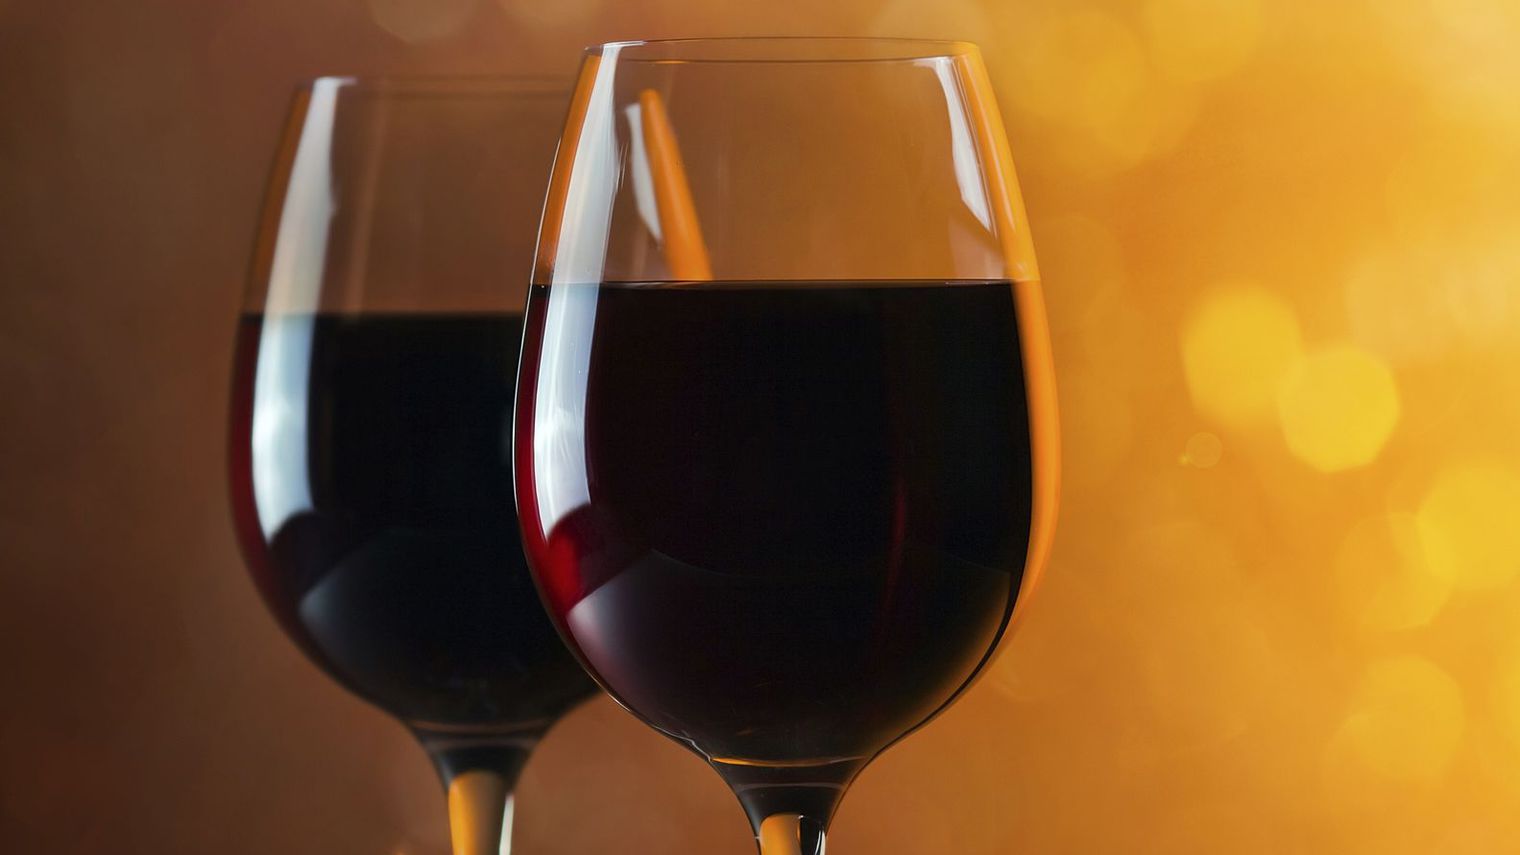 Le vin primeur beaujolais ou le vin bordelais